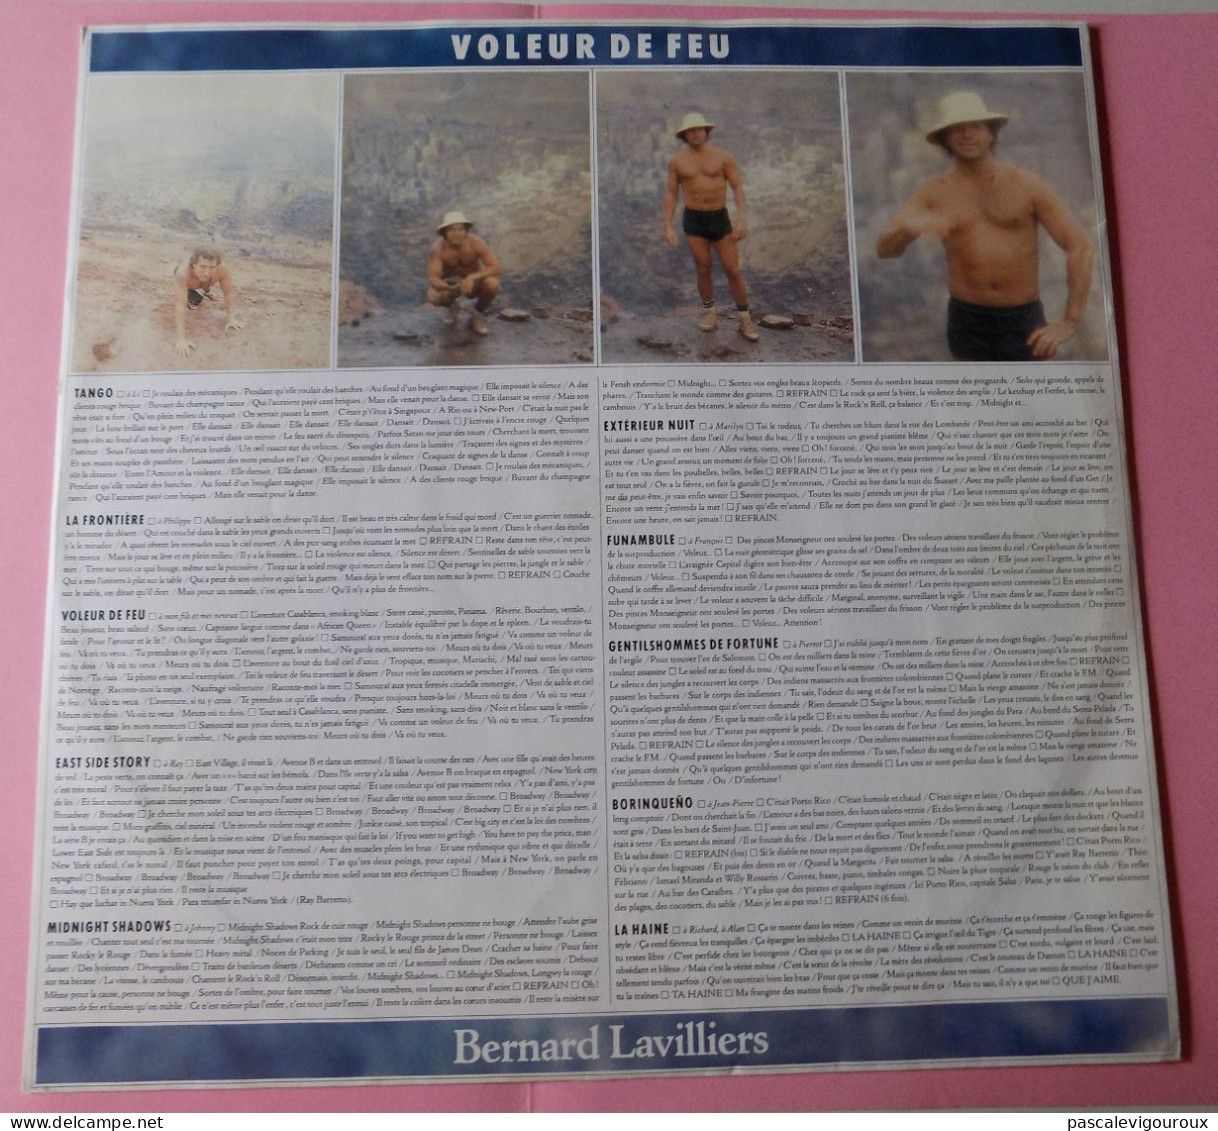 BERNARD LAVILLIERS VOLEUR DE FEU DOUBLE 33T LP 1986 BARCLAY 829.341/1 2 disques